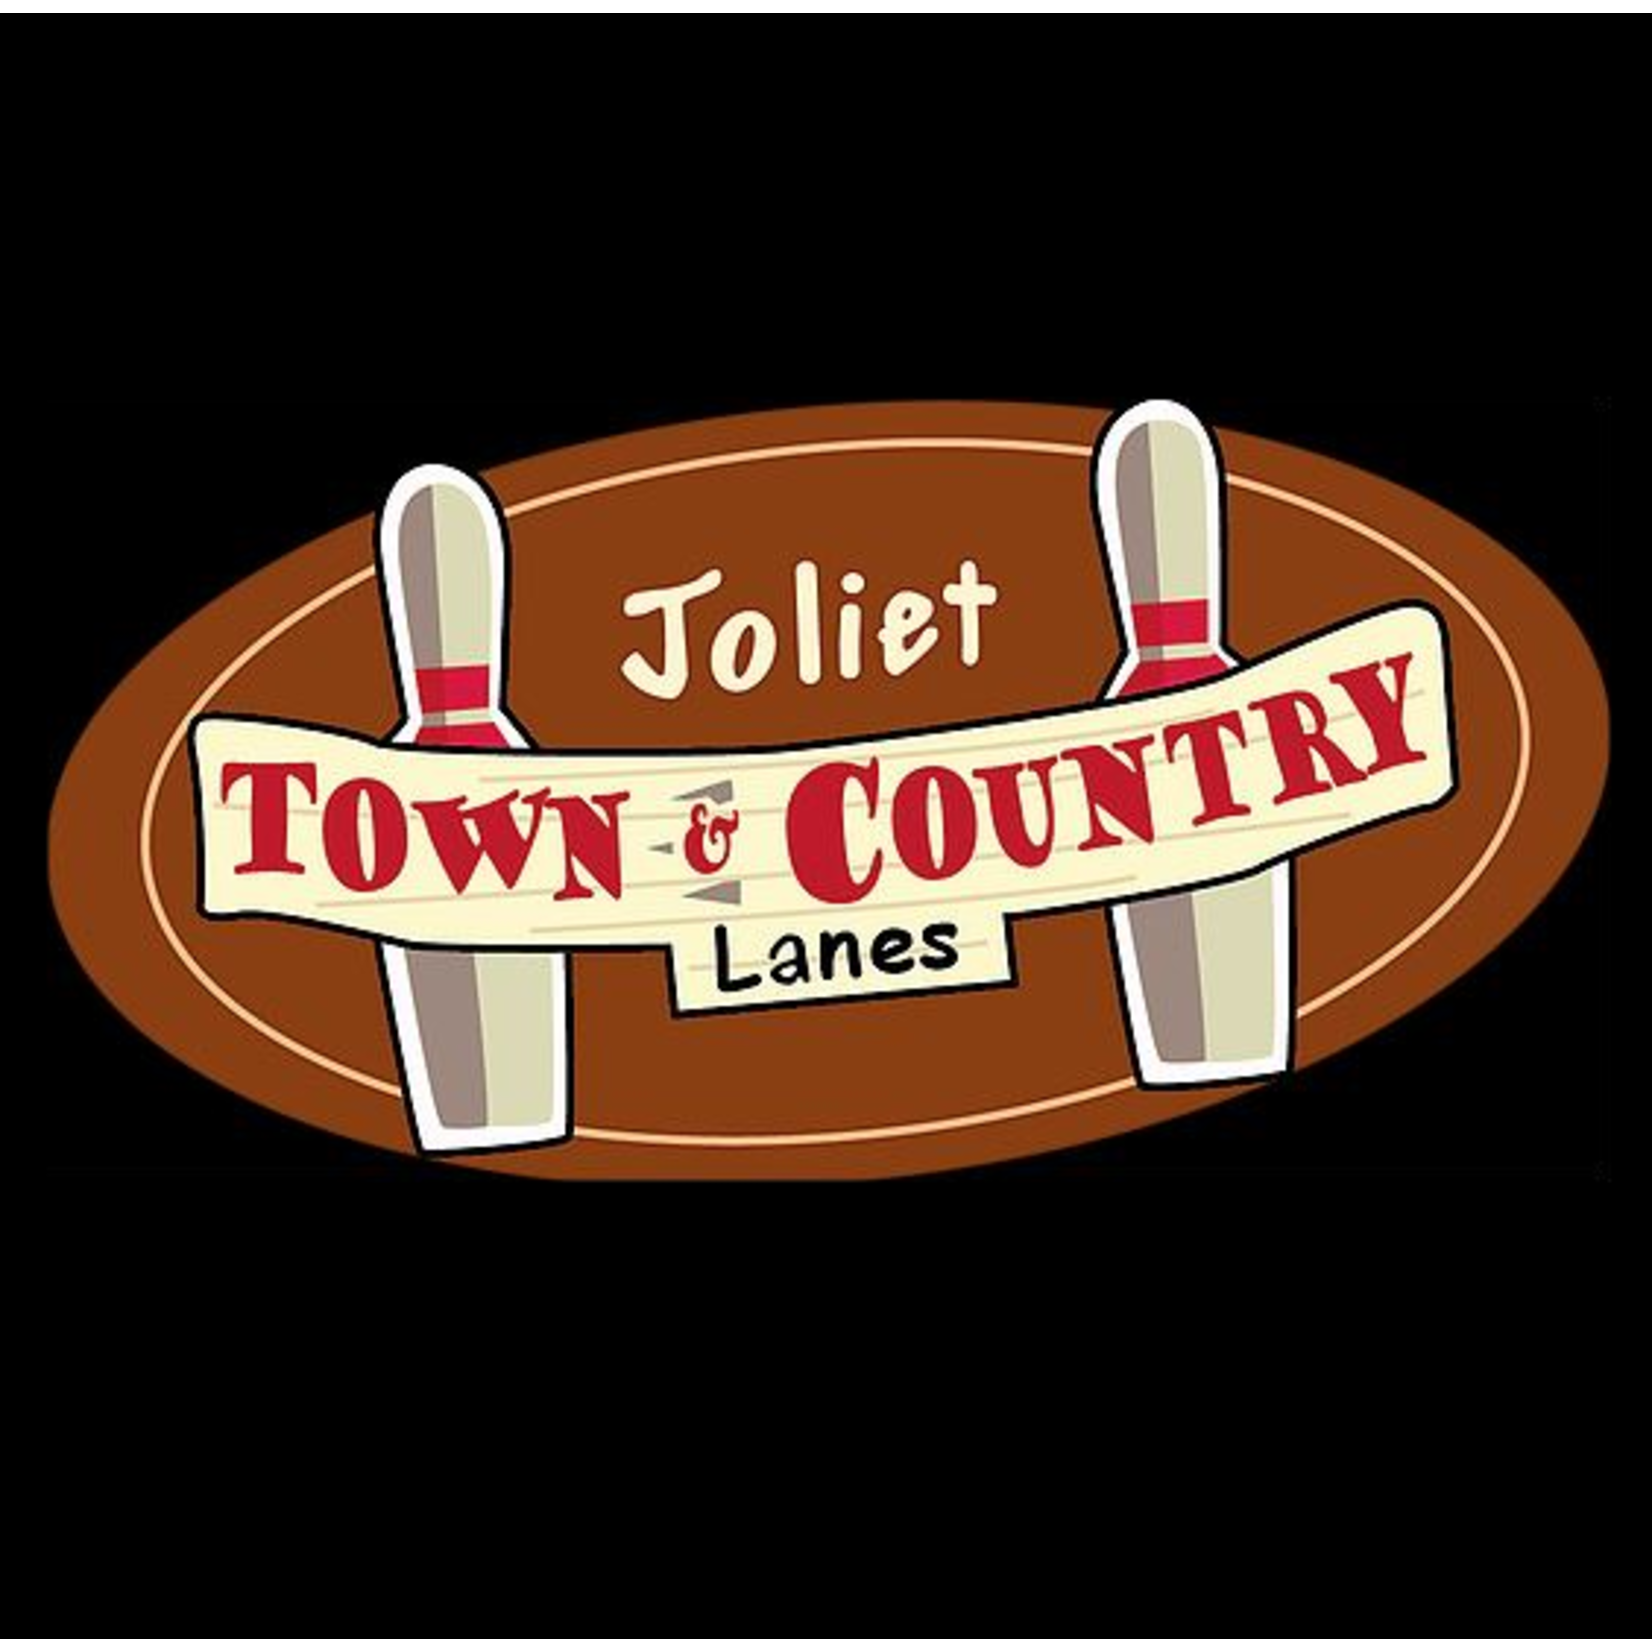 Joliet Town & Country Lanes-Joliet Joliet Town & Country Lanes-Joliet  $60.00 Family Bowling Package